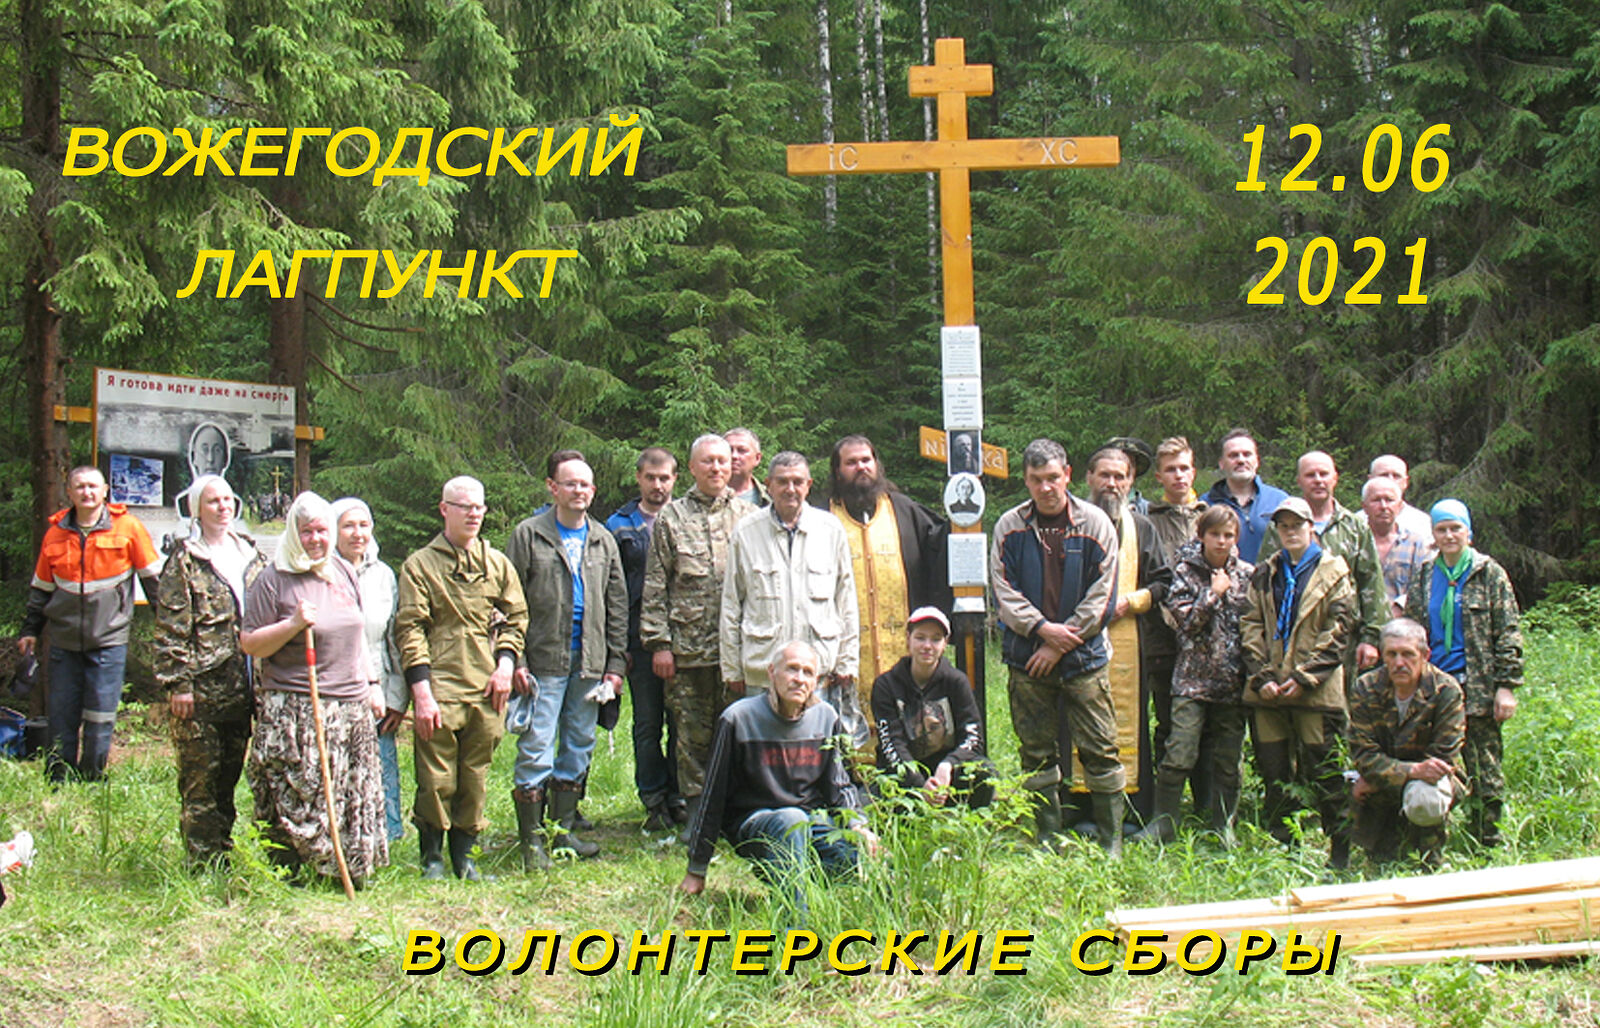 Все желающие приглашаются к участию в паломническом походе«Вожегодский лагпункт – наша память 2022» 